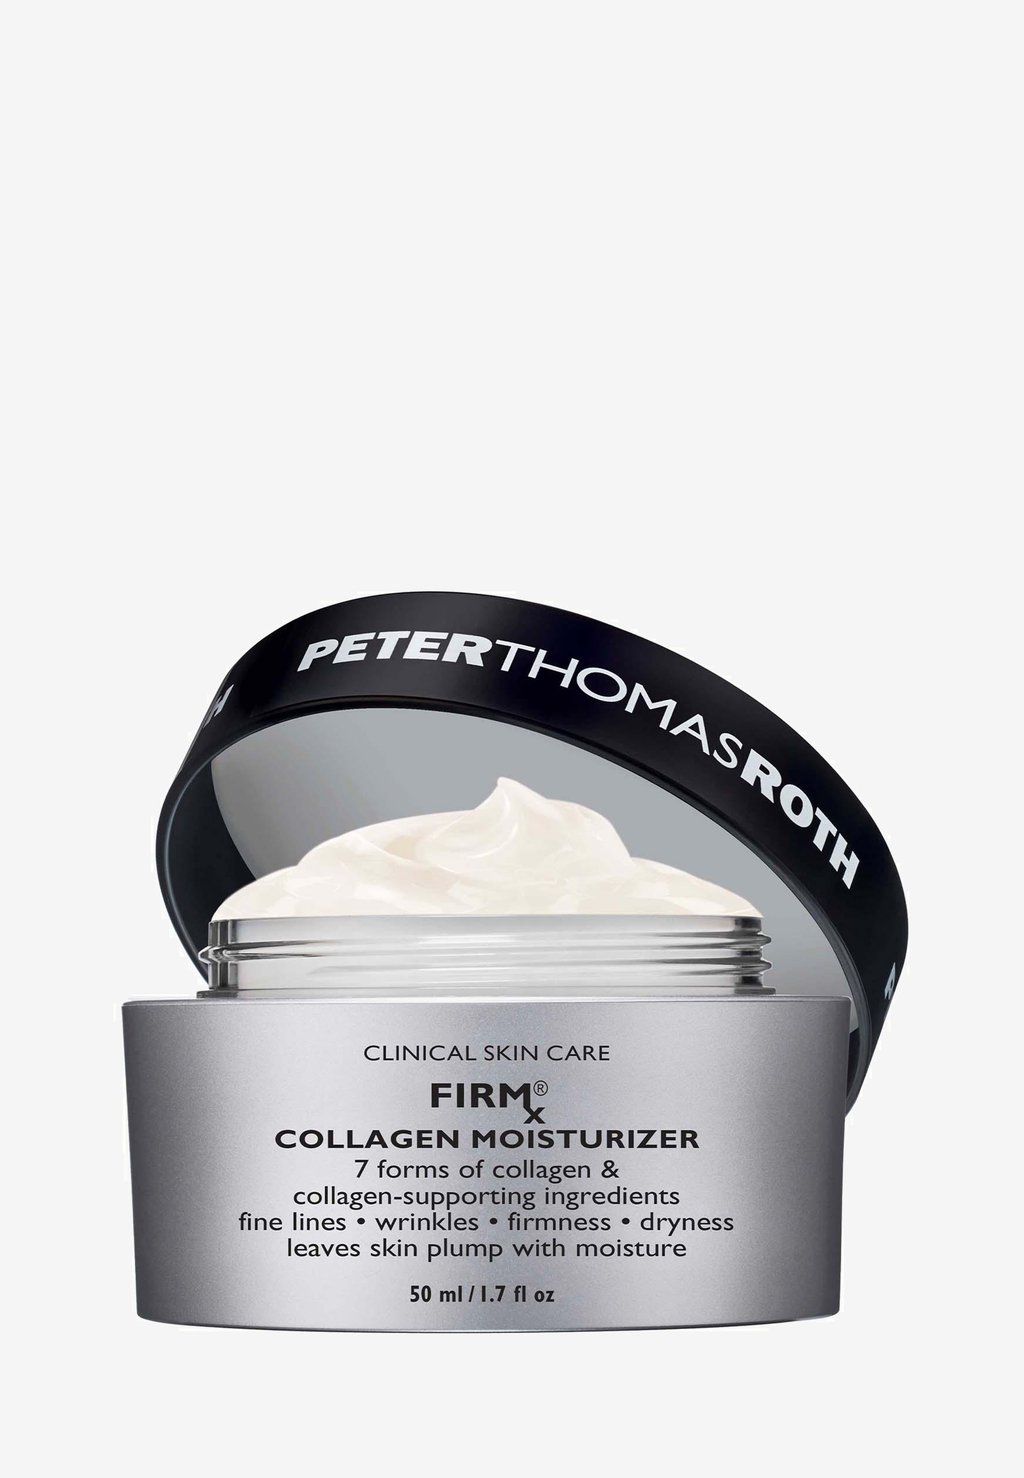 Дневной крем Firmx​ Collagen Moisturizer Peter Thomas Roth сыворотка firmx коллагеновая сыворотка peter thomas roth